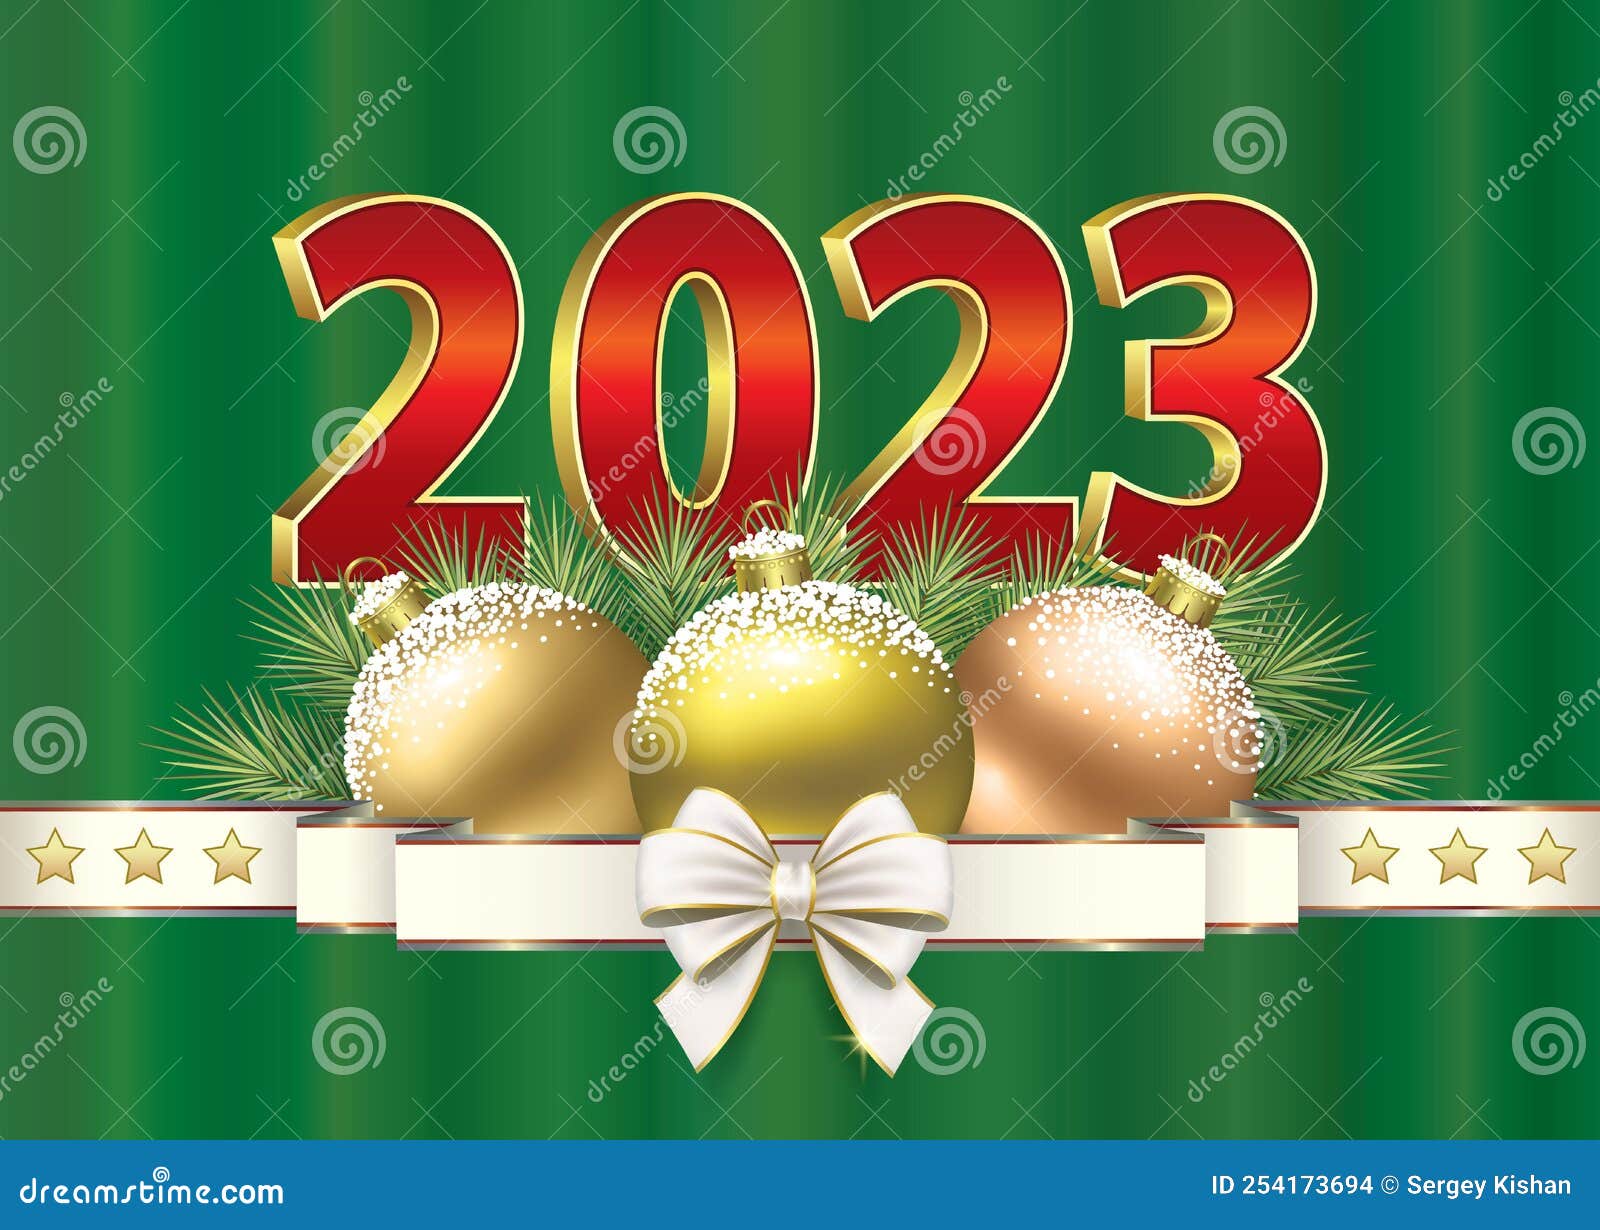 Feliz Ano Novo 2023. Cartão De Natal Com Decoração De Férias E Números 2023  Em Vermelho E Dourado Ilustração do Vetor - Ilustração de fundo, luxo:  254173694